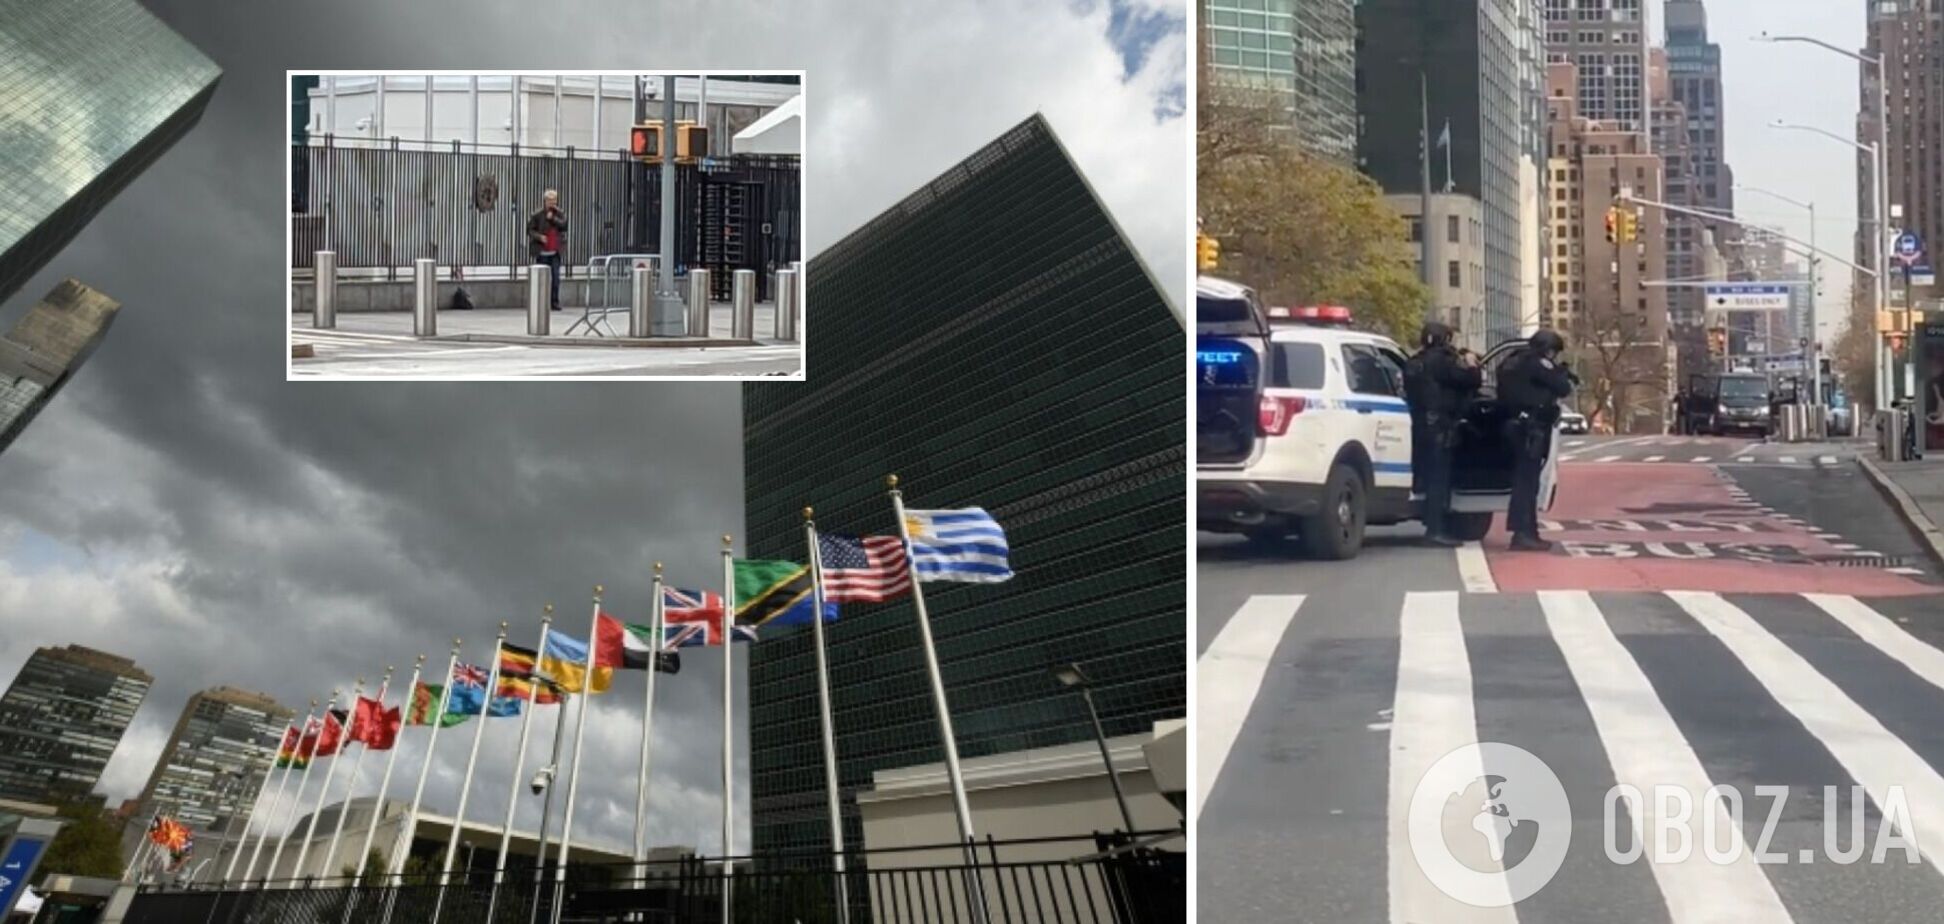 У штаб-квартиры ООН в Нью-Йорке полиция задержала грозившего самоубийством вооруженного мужчину. Видео